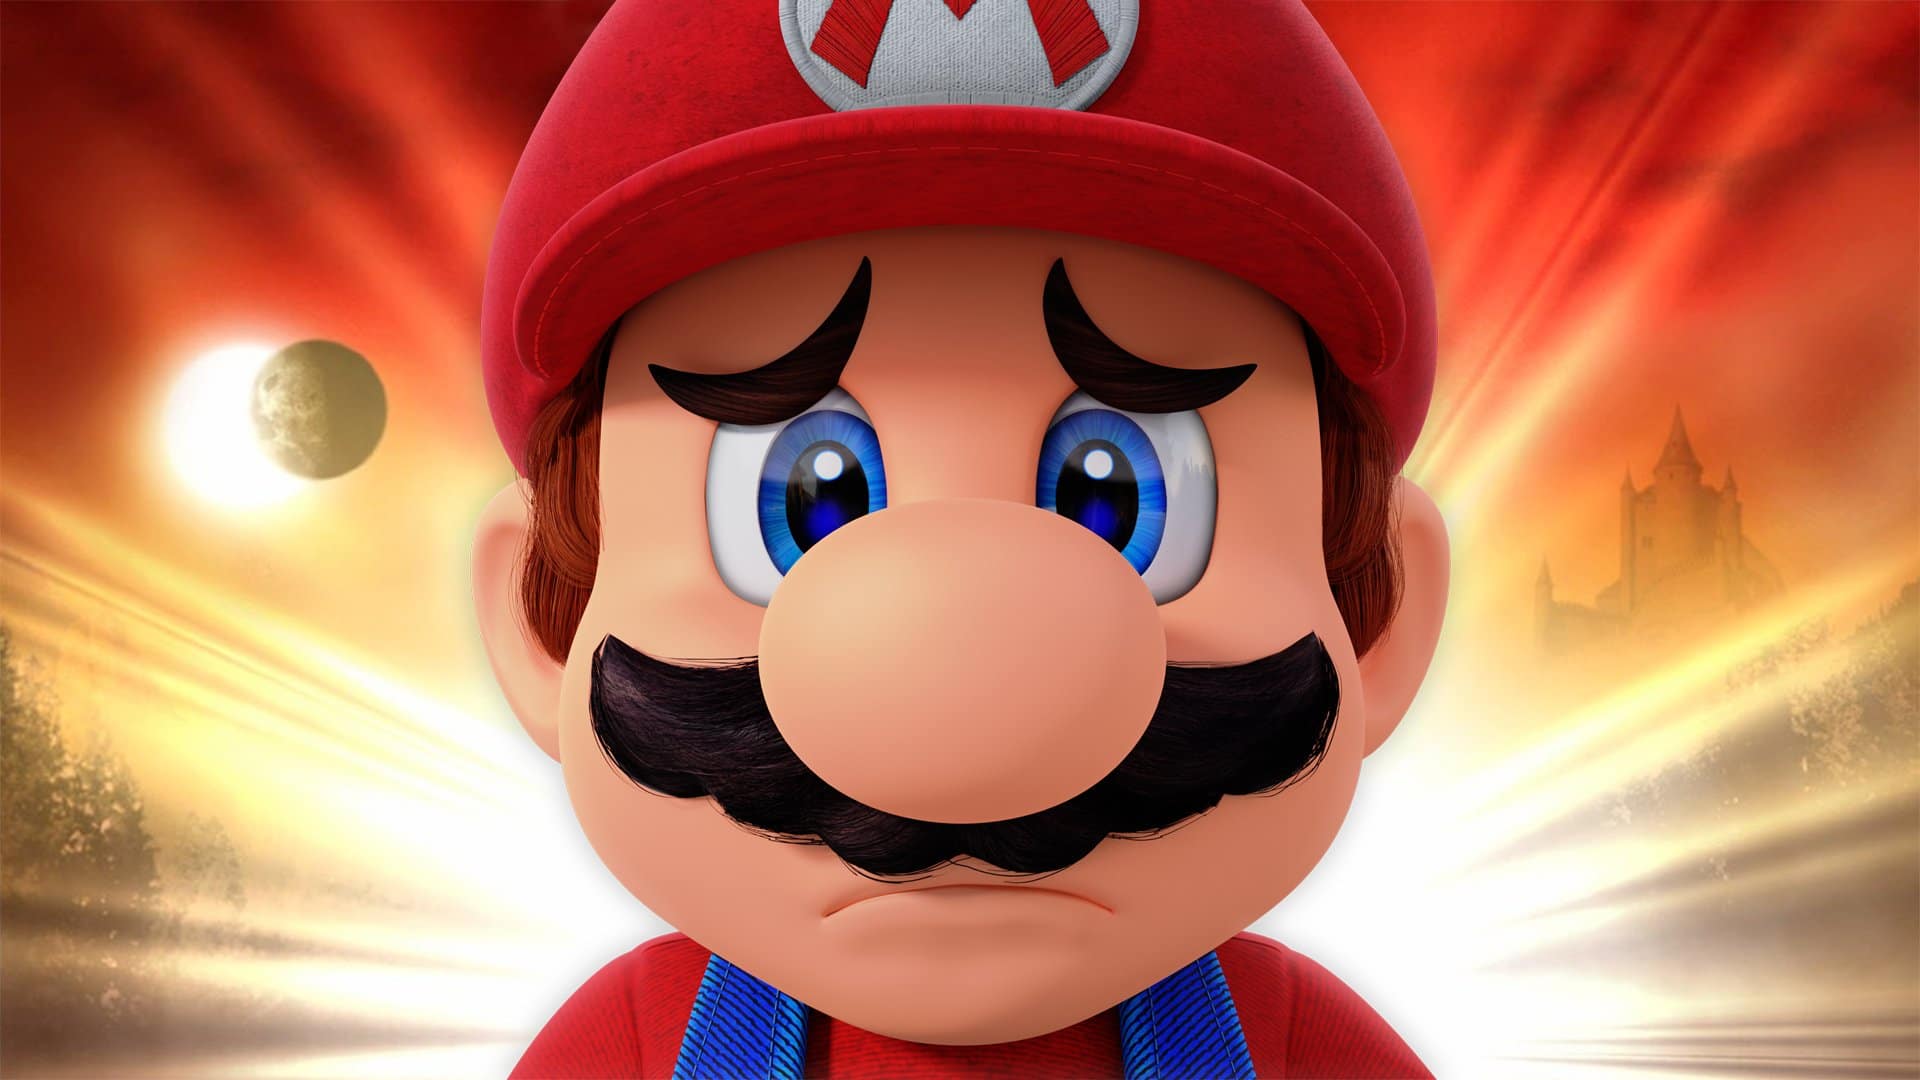 Mira esta rara y perturbadora máscara de Super Mario de 1990